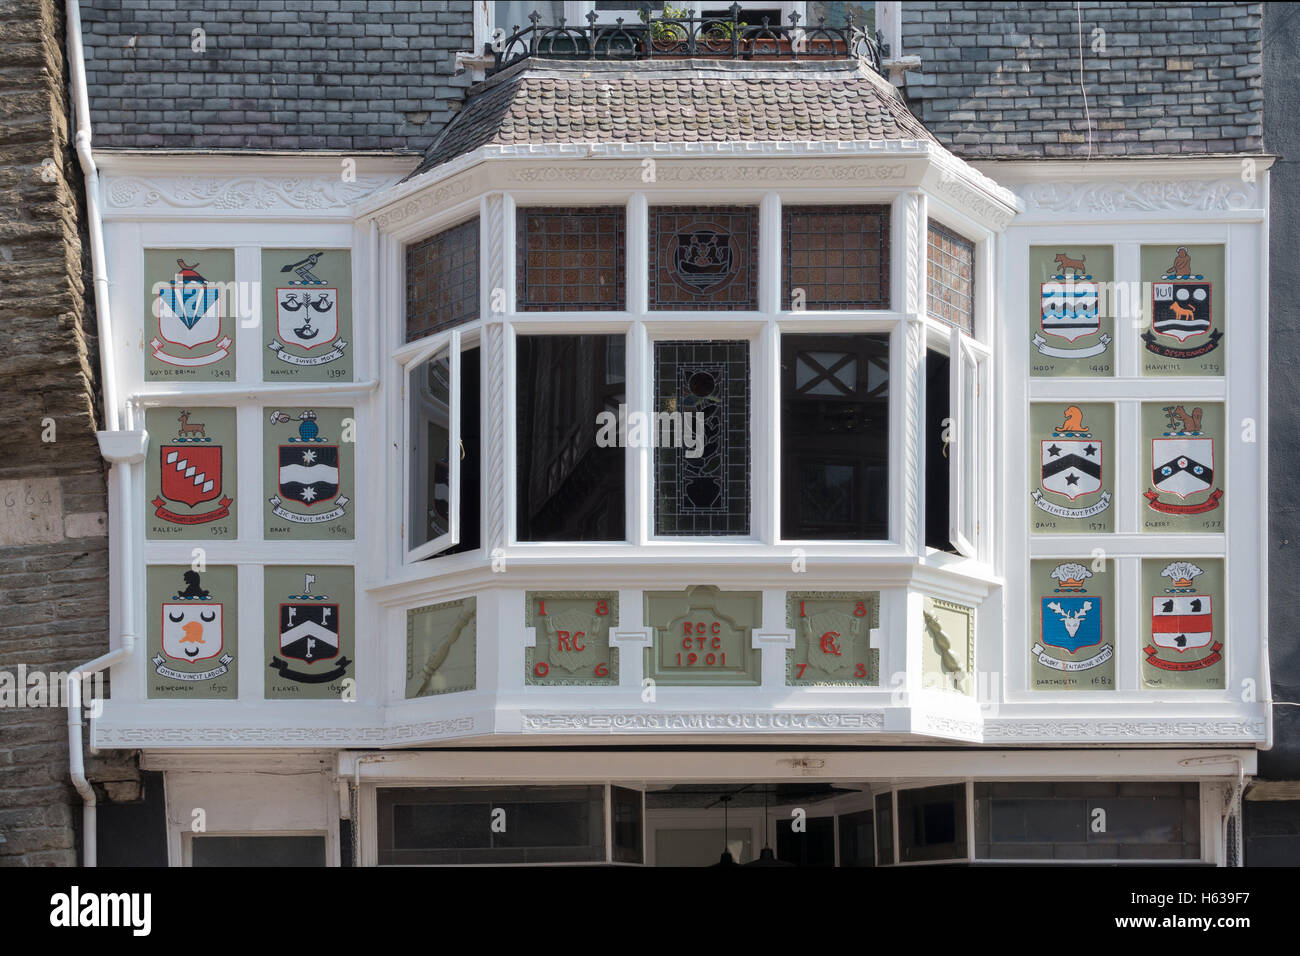 Blasons colorés entourent cette vieille fenêtre en baie dans la région de Dartmouth, Devon UK Banque D'Images